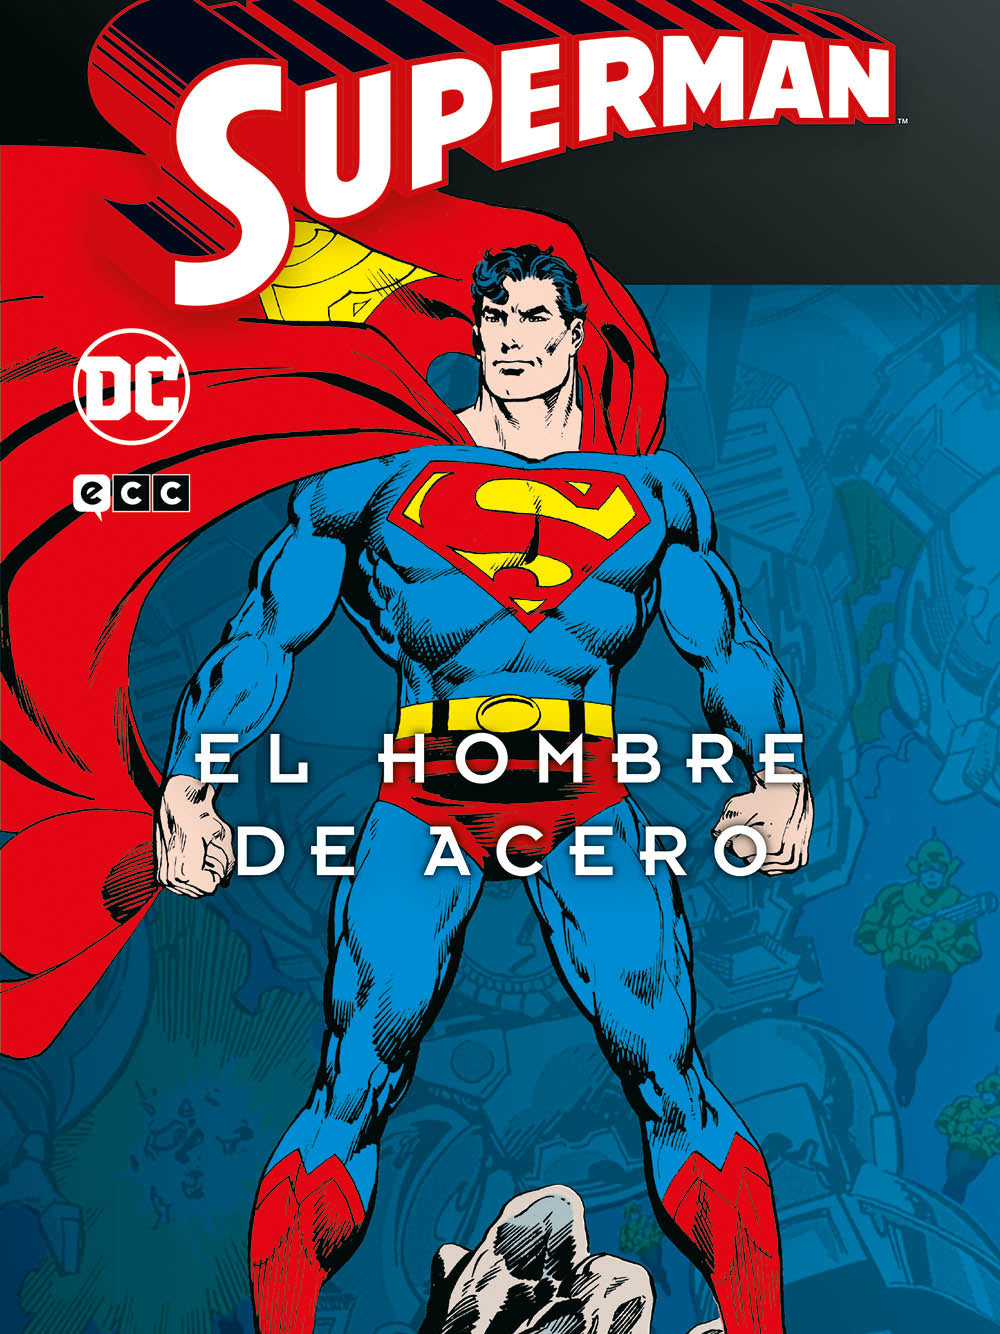 Superman: El hombre de acero vol. 1 de 4 (Superman Legends) Cinecolor ENcuadrocomics